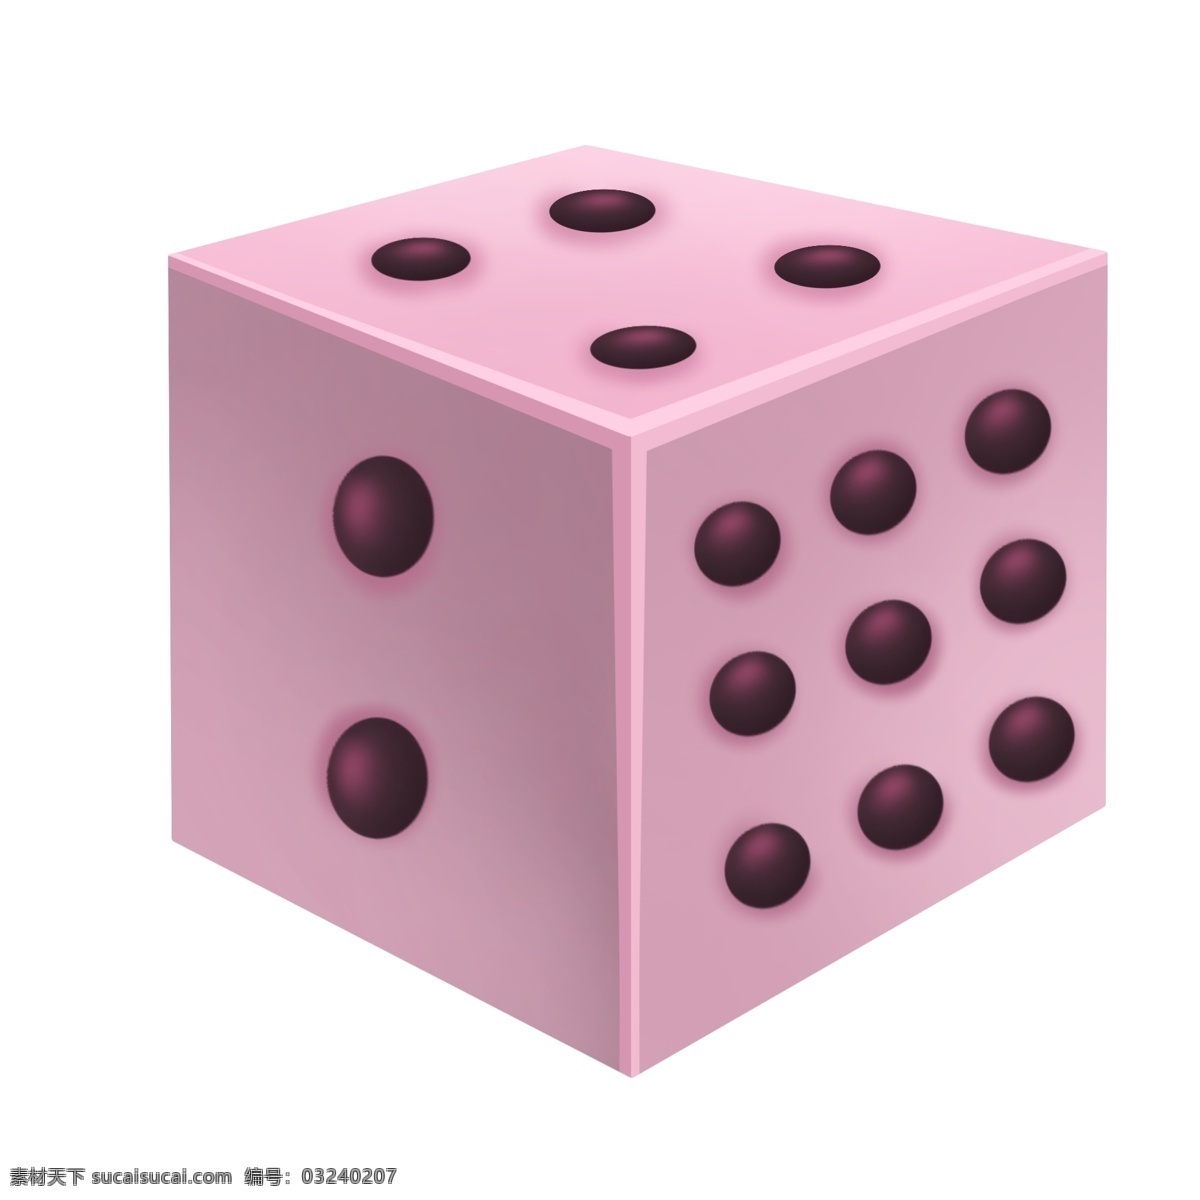 粉色 立体 骰子 插画 粉色的色子 黑色的圆点 立体骰子插画 创意粉色骰子 正方体骰子 麻将游戏道具